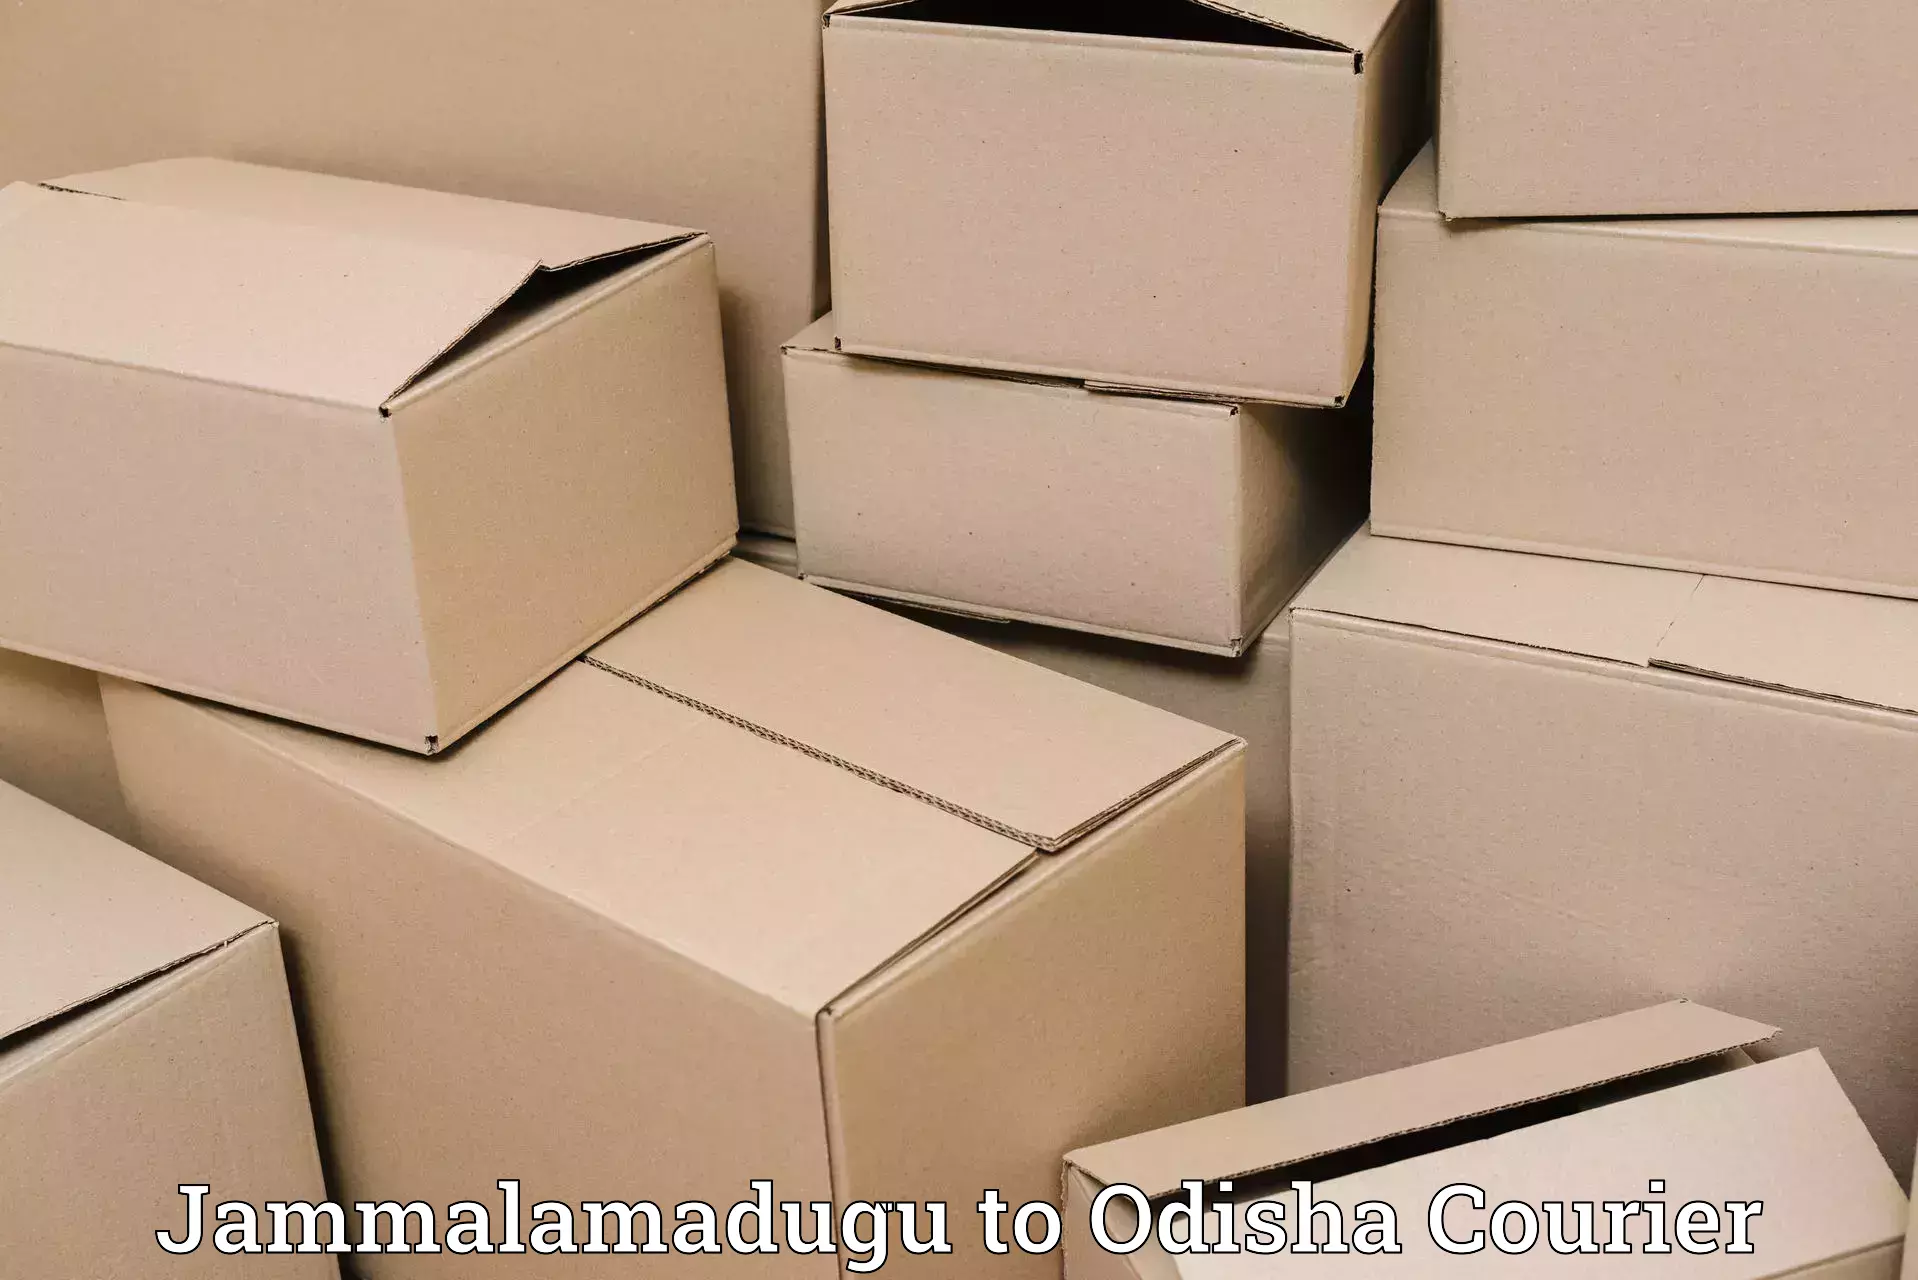 Express logistics providers Jammalamadugu to Agarpada